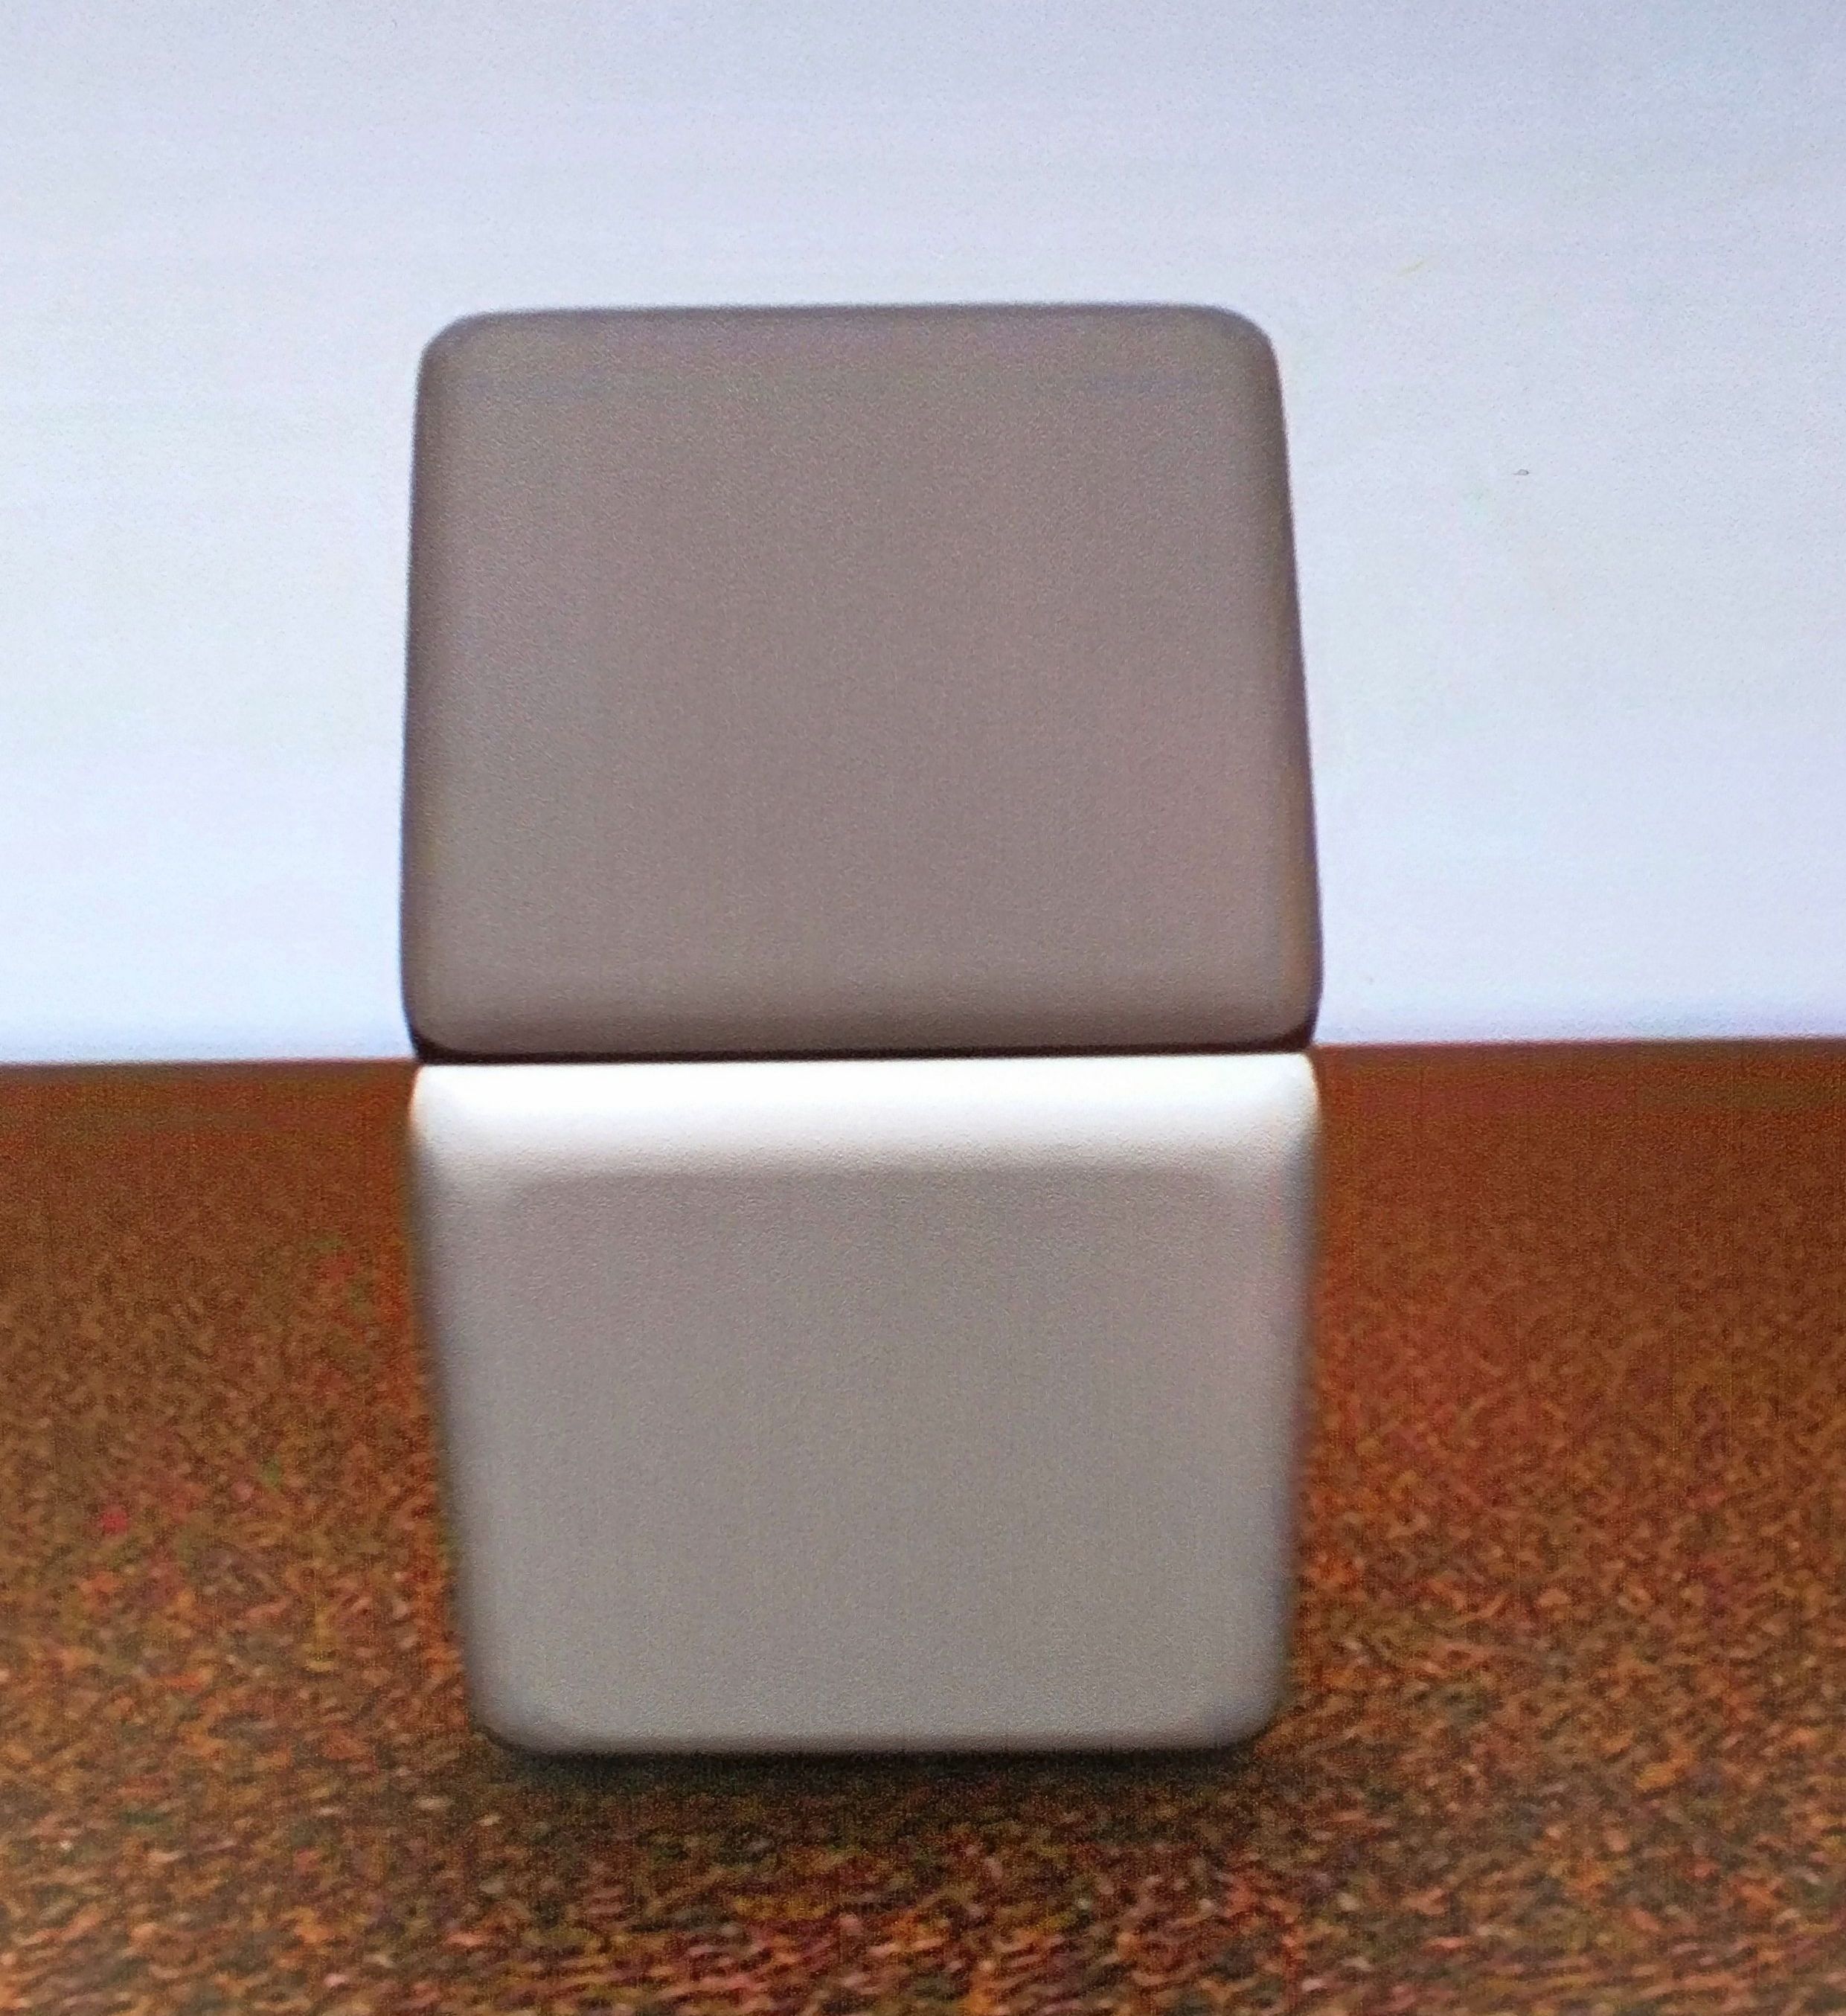 Cube цвет. Квадраты одинакового цвета. Оптическая иллюзия серый квадрат. Оптическая иллюзия цвета. Иллюзия с цветом квадратов.